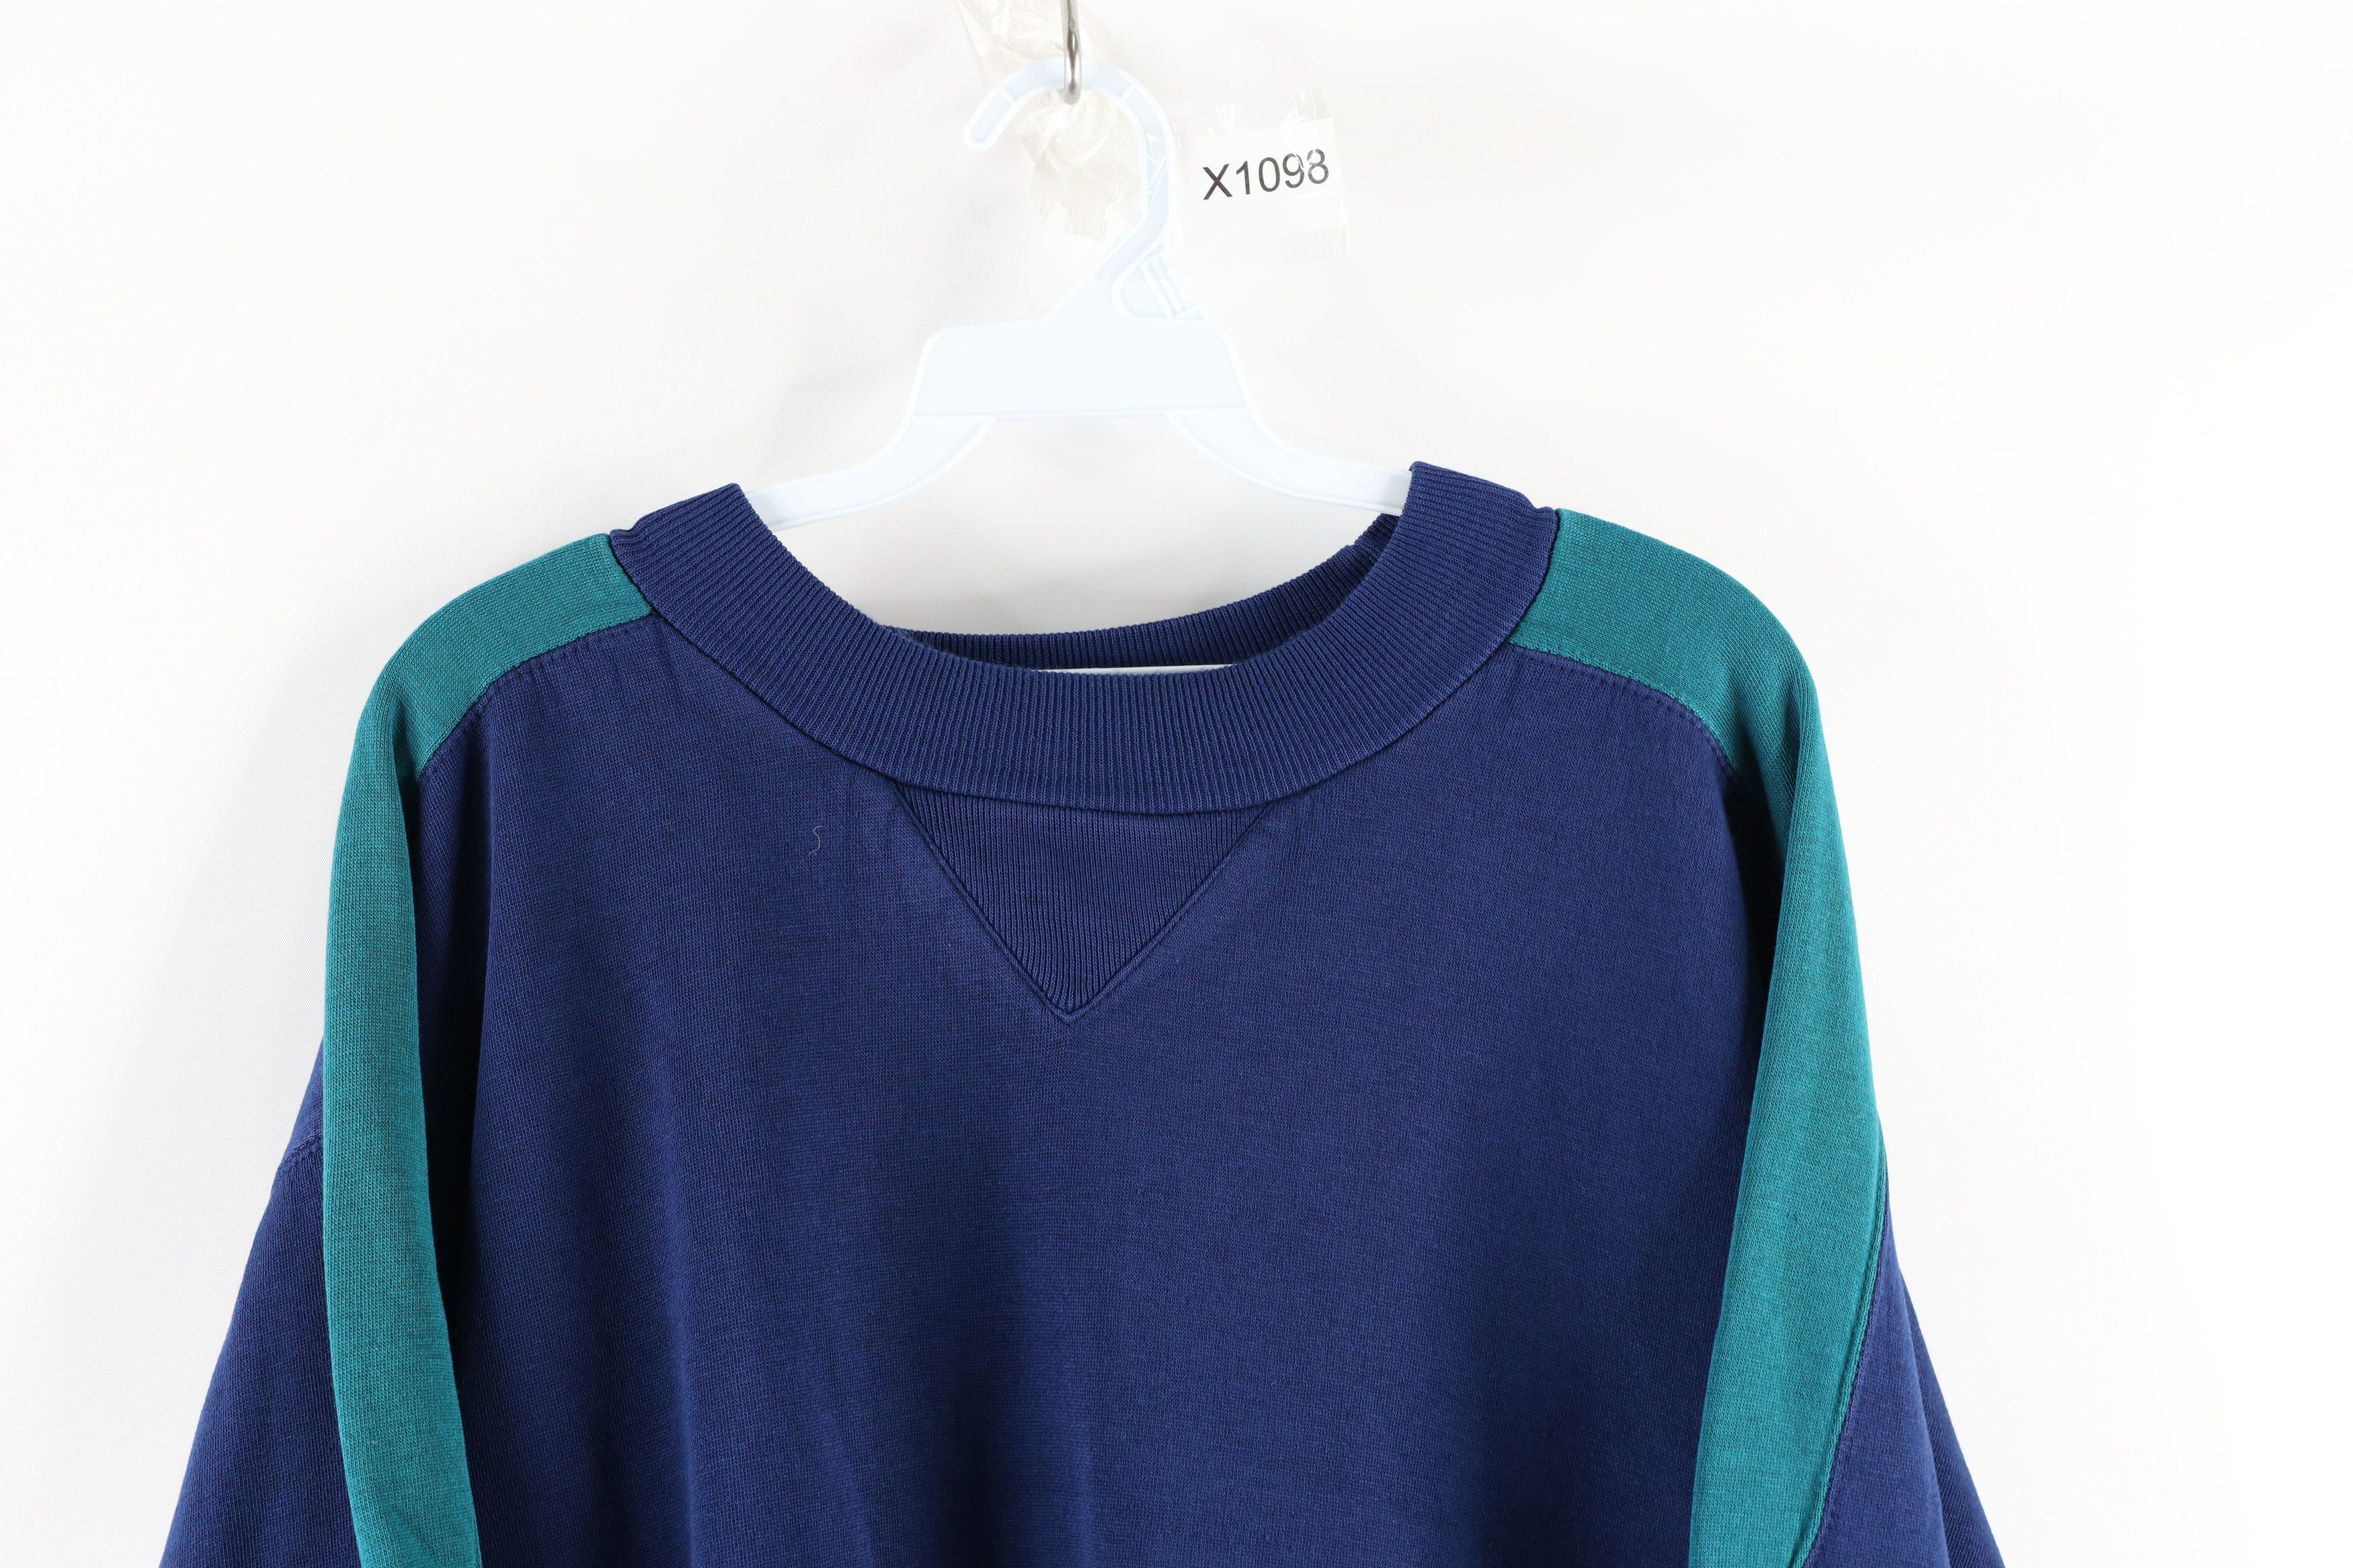 Vintage Vintage 90s Streetwear Color Block Crewneck Sweatshirt Navy Size US XL / EU 56 / 4 - 2 Preview